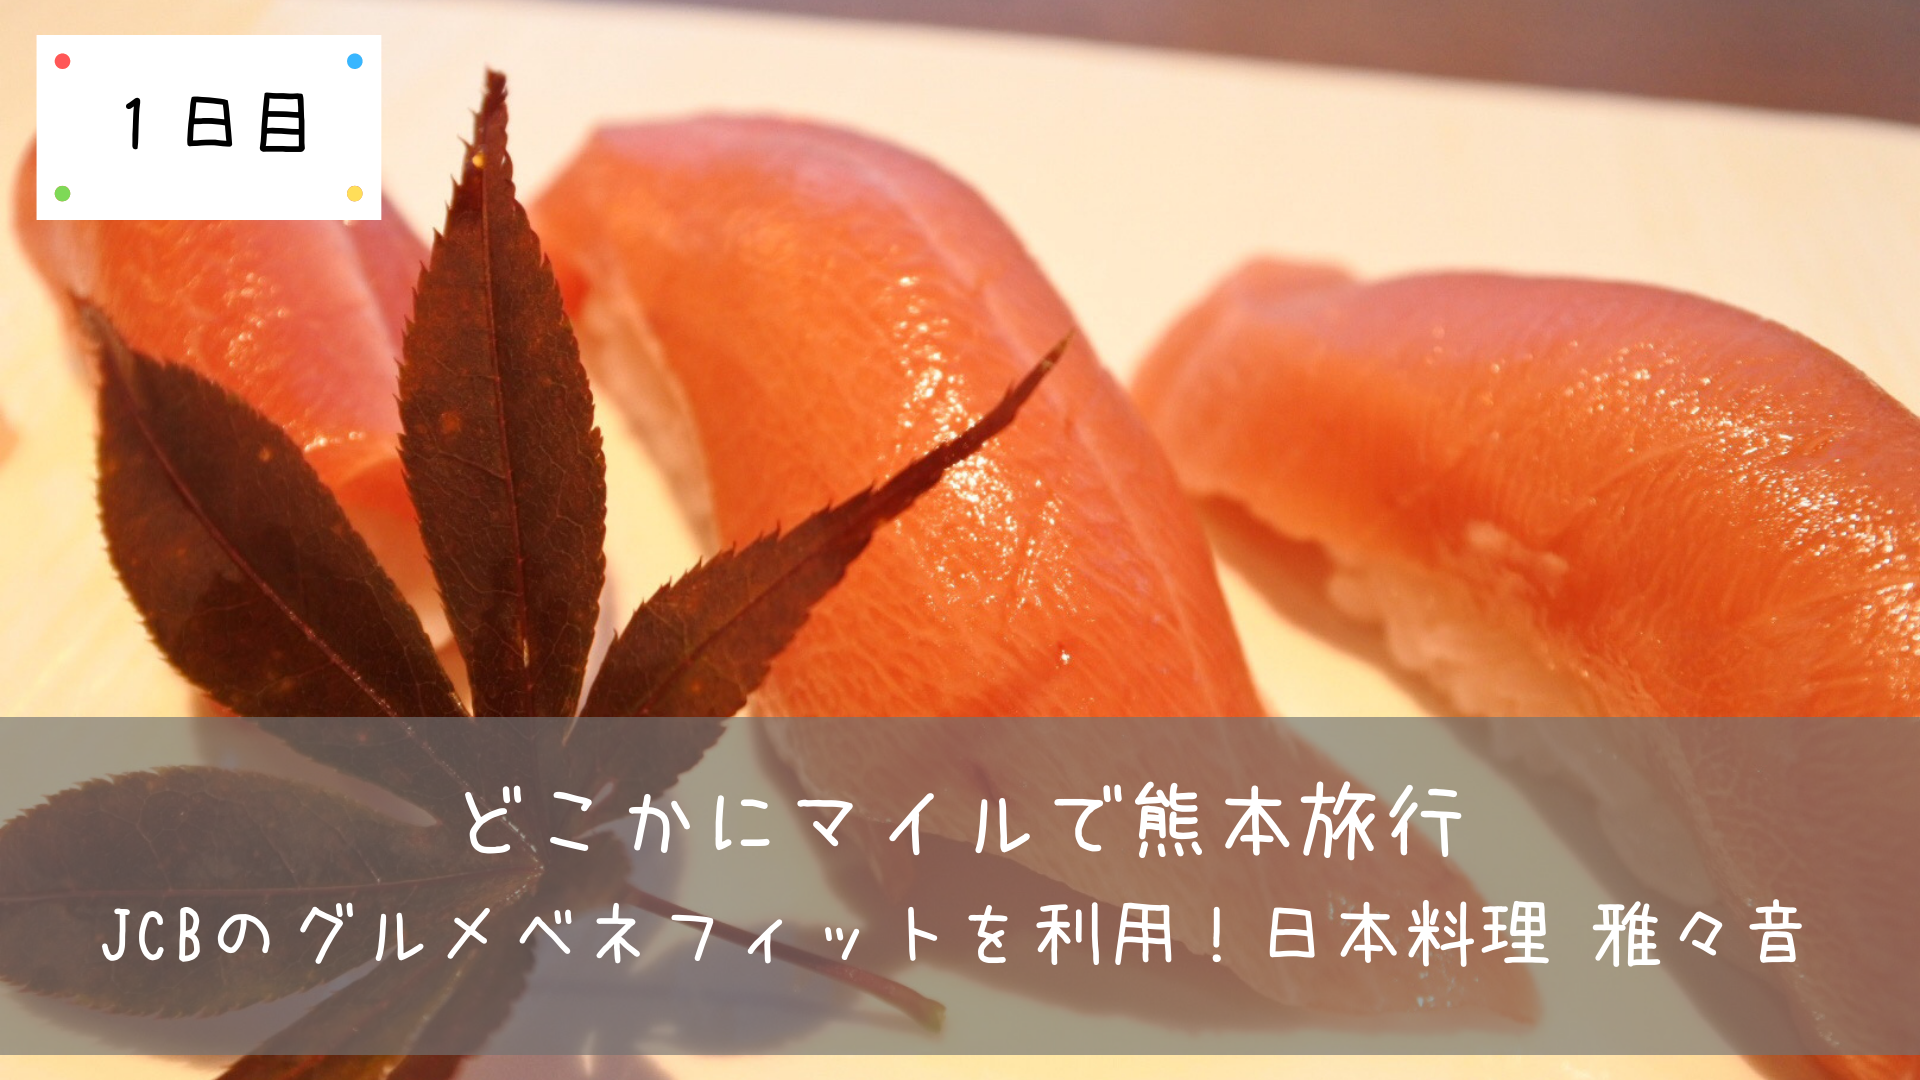 熊本旅行 Jcbのグルメベネフィットを利用 日本料理 雅々音 1日目 共働きくま夫婦のブログ